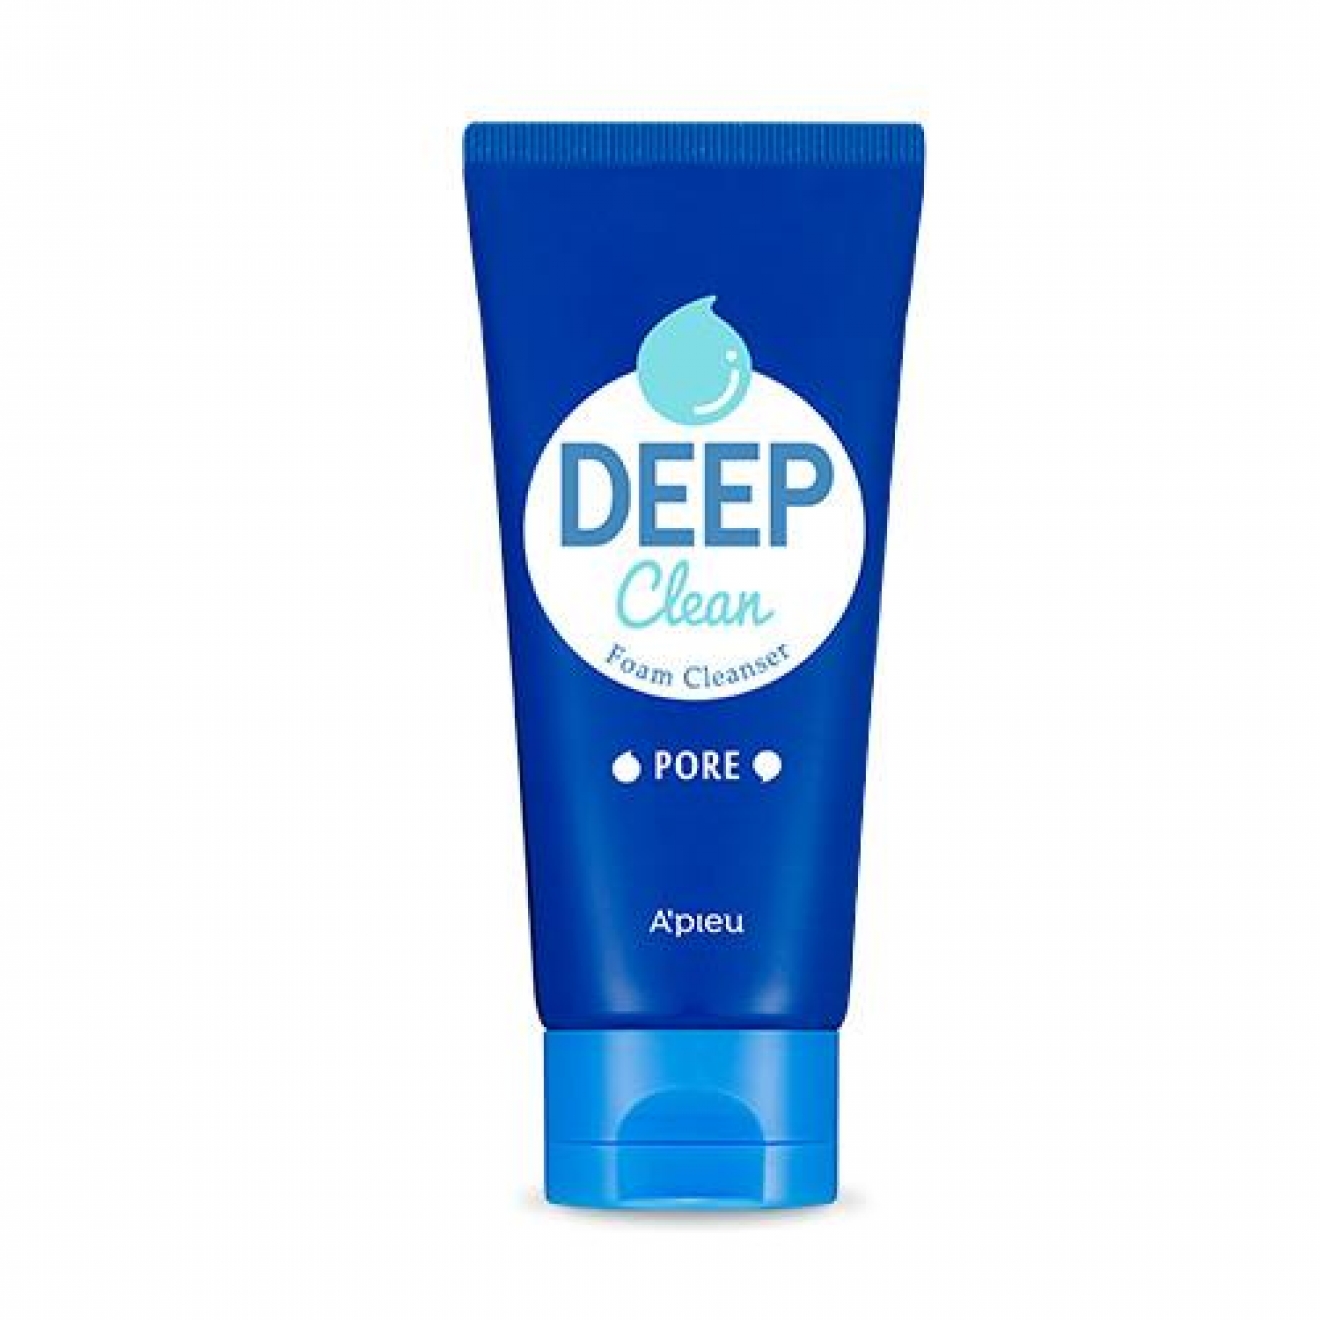 Пенка с содой для глубокого очищения пор, Apieu, Deep Clean Foam Cleanser Pore, 130ml